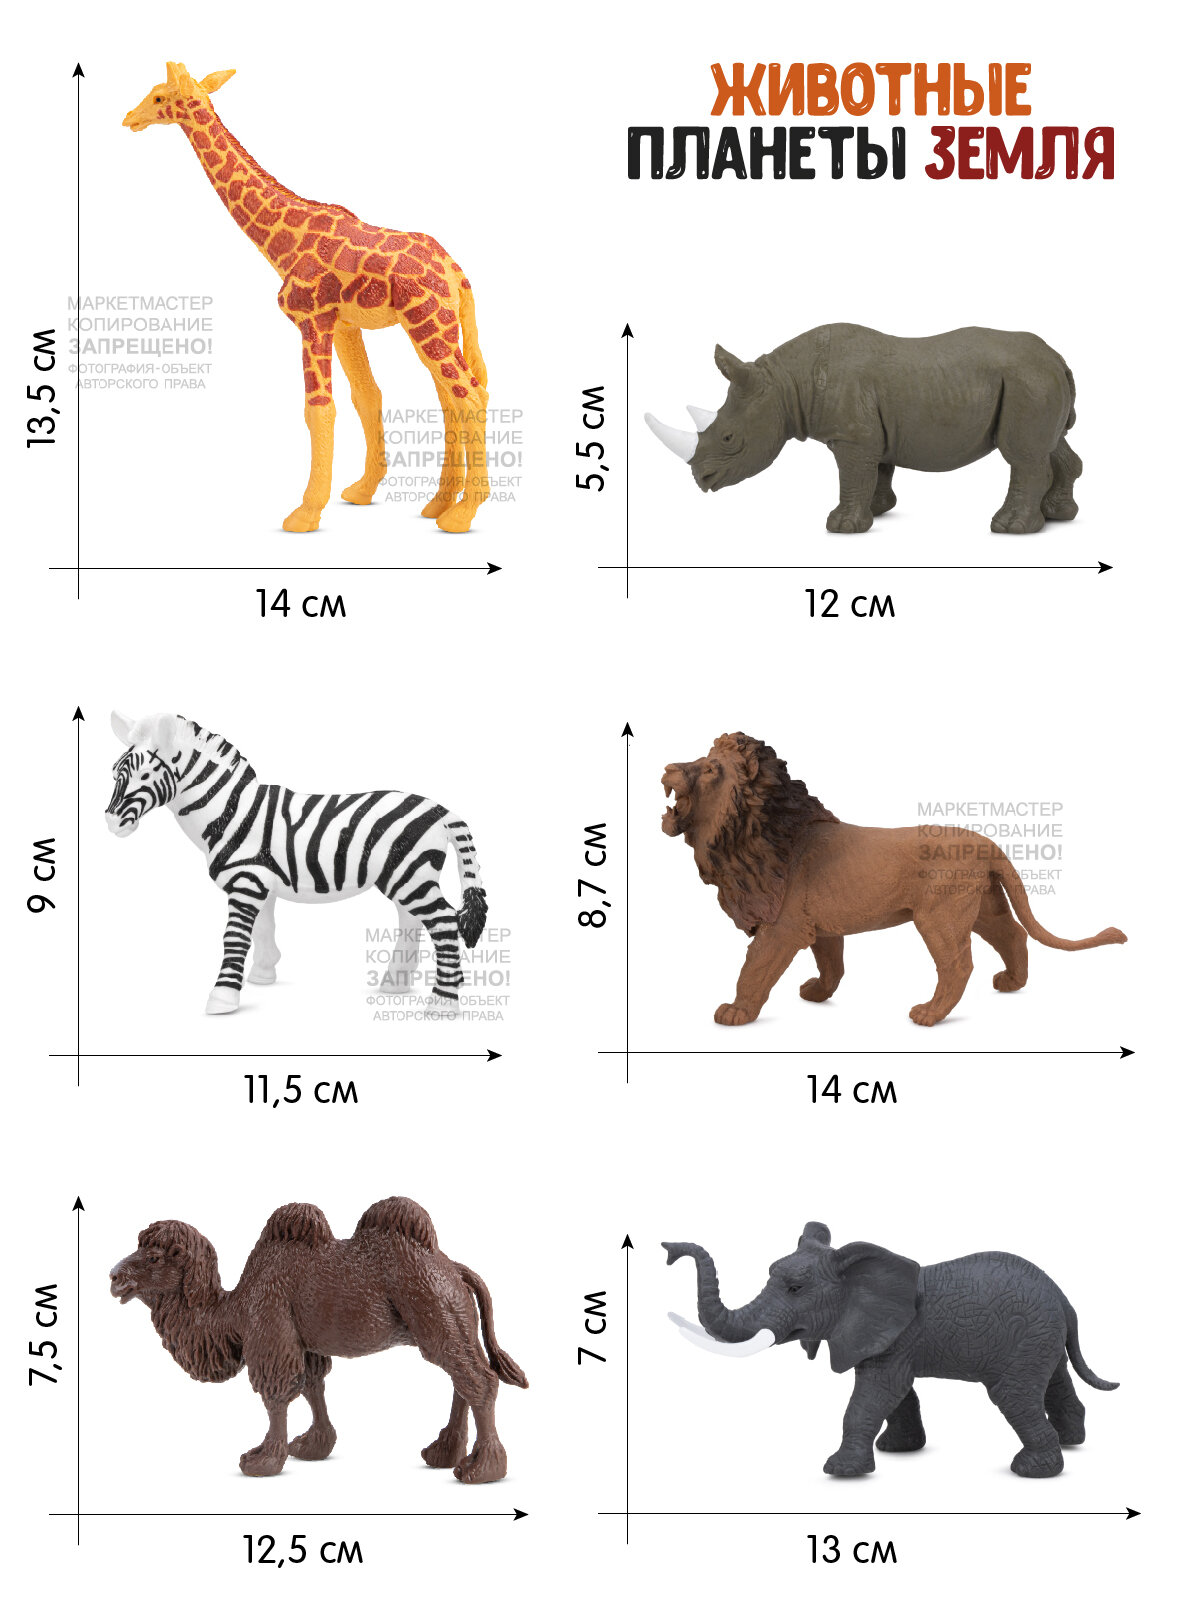 Игровой набор "Животные Африки" компания друзей, серия "Животные планеты Земля", 6 фигурок, JB0207202